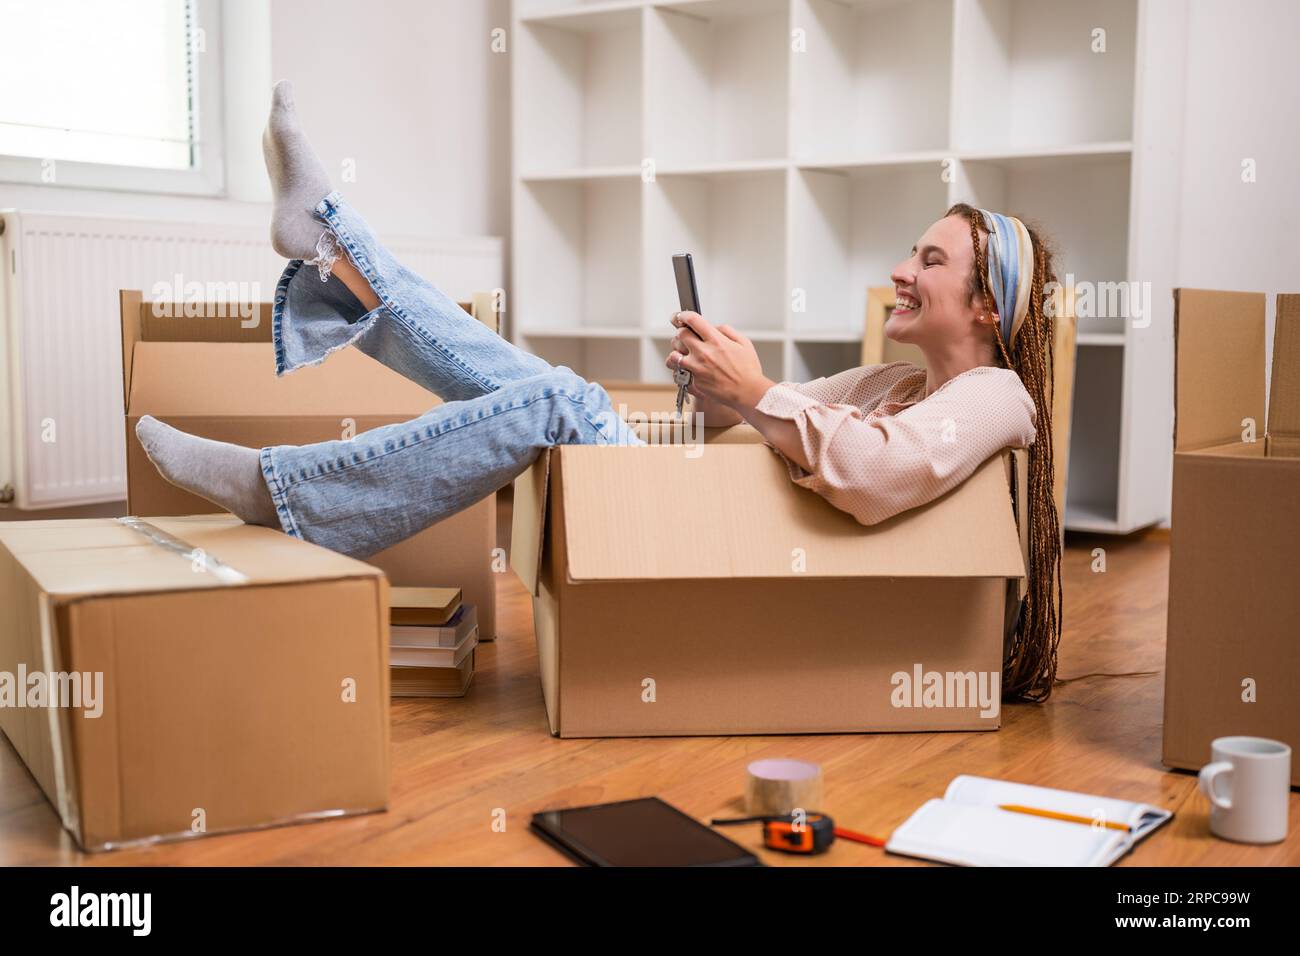 Glückliche Frau, die ein Telefon benutzt und Spaß hat, während sie in eine neue Wohnung zieht. Stockfoto